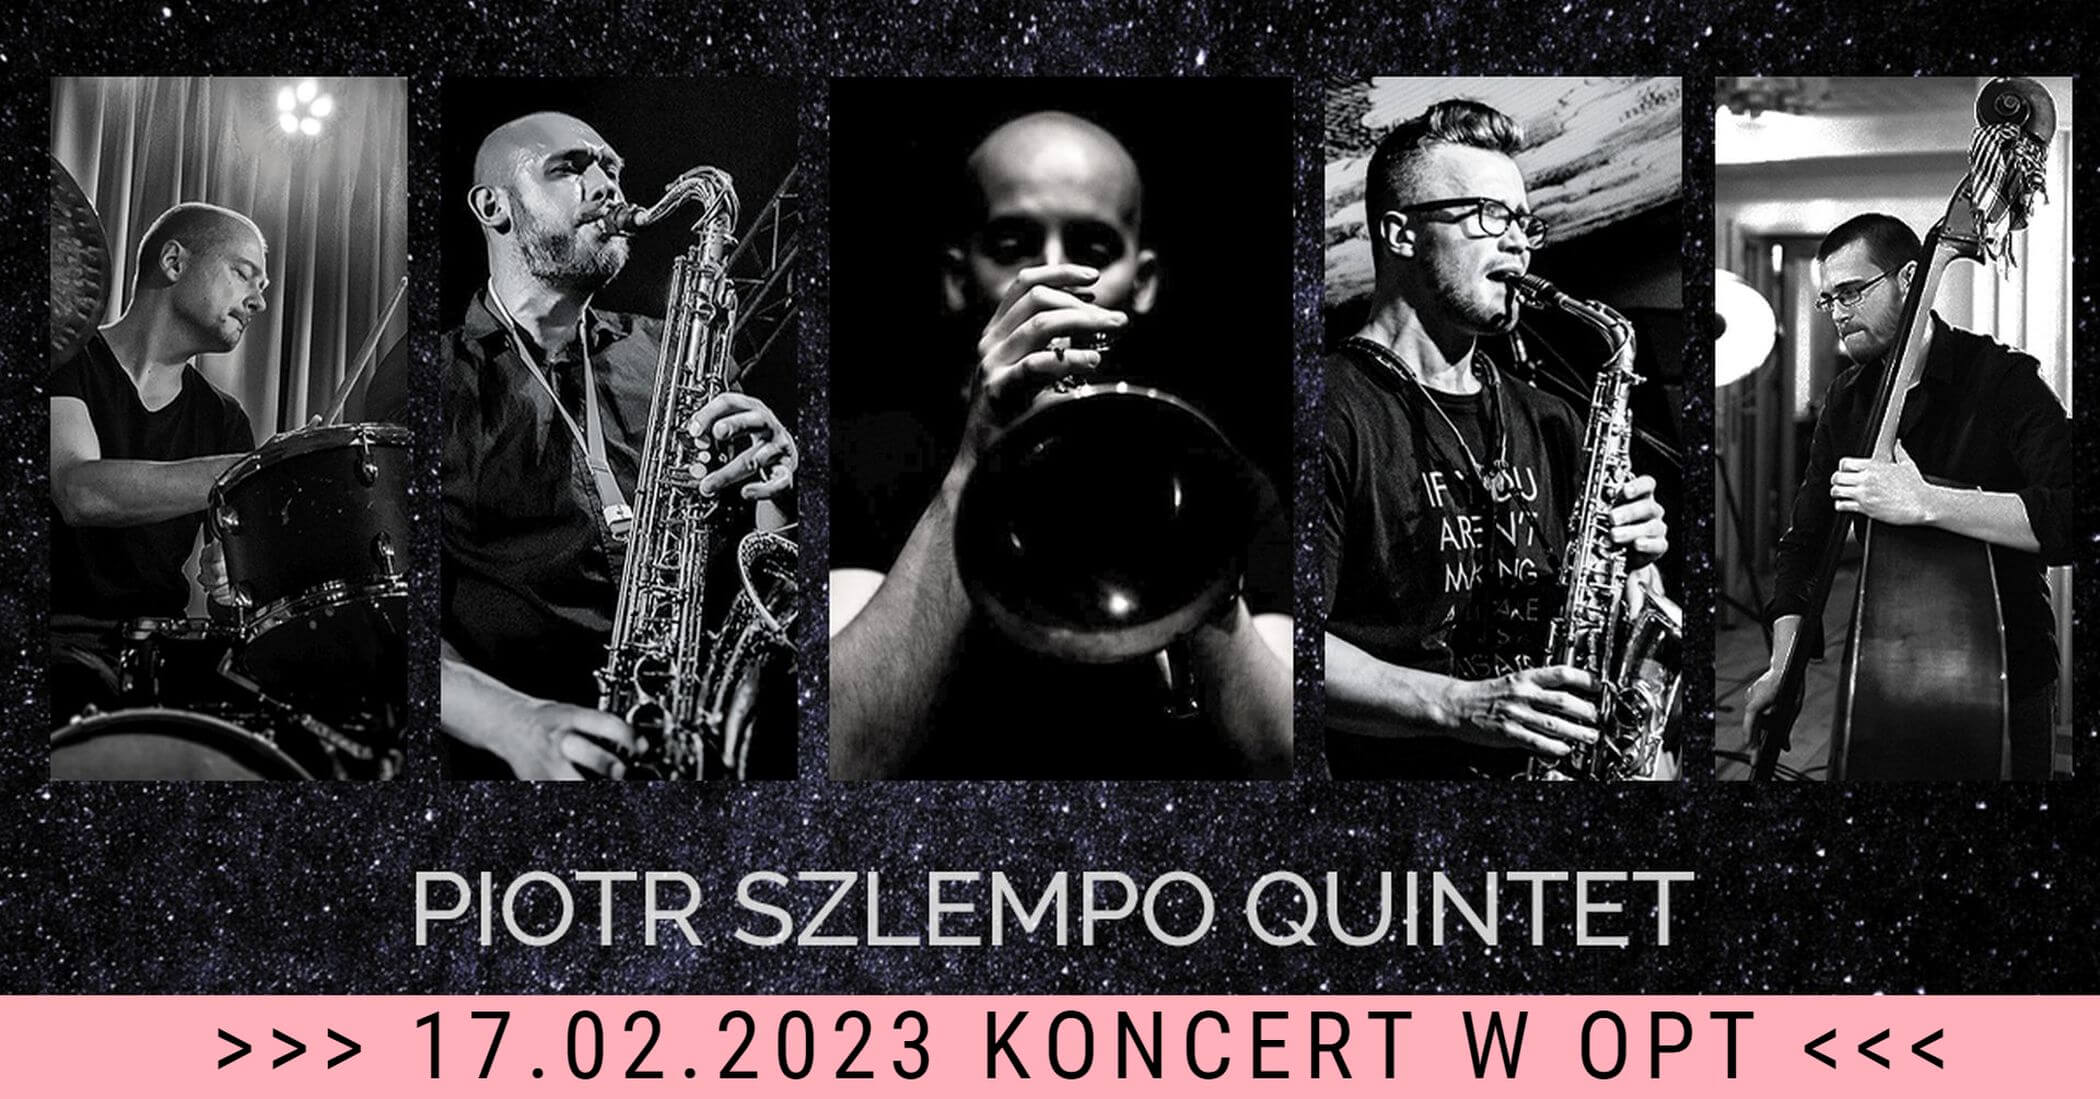 Piotr Szlempo Quintet